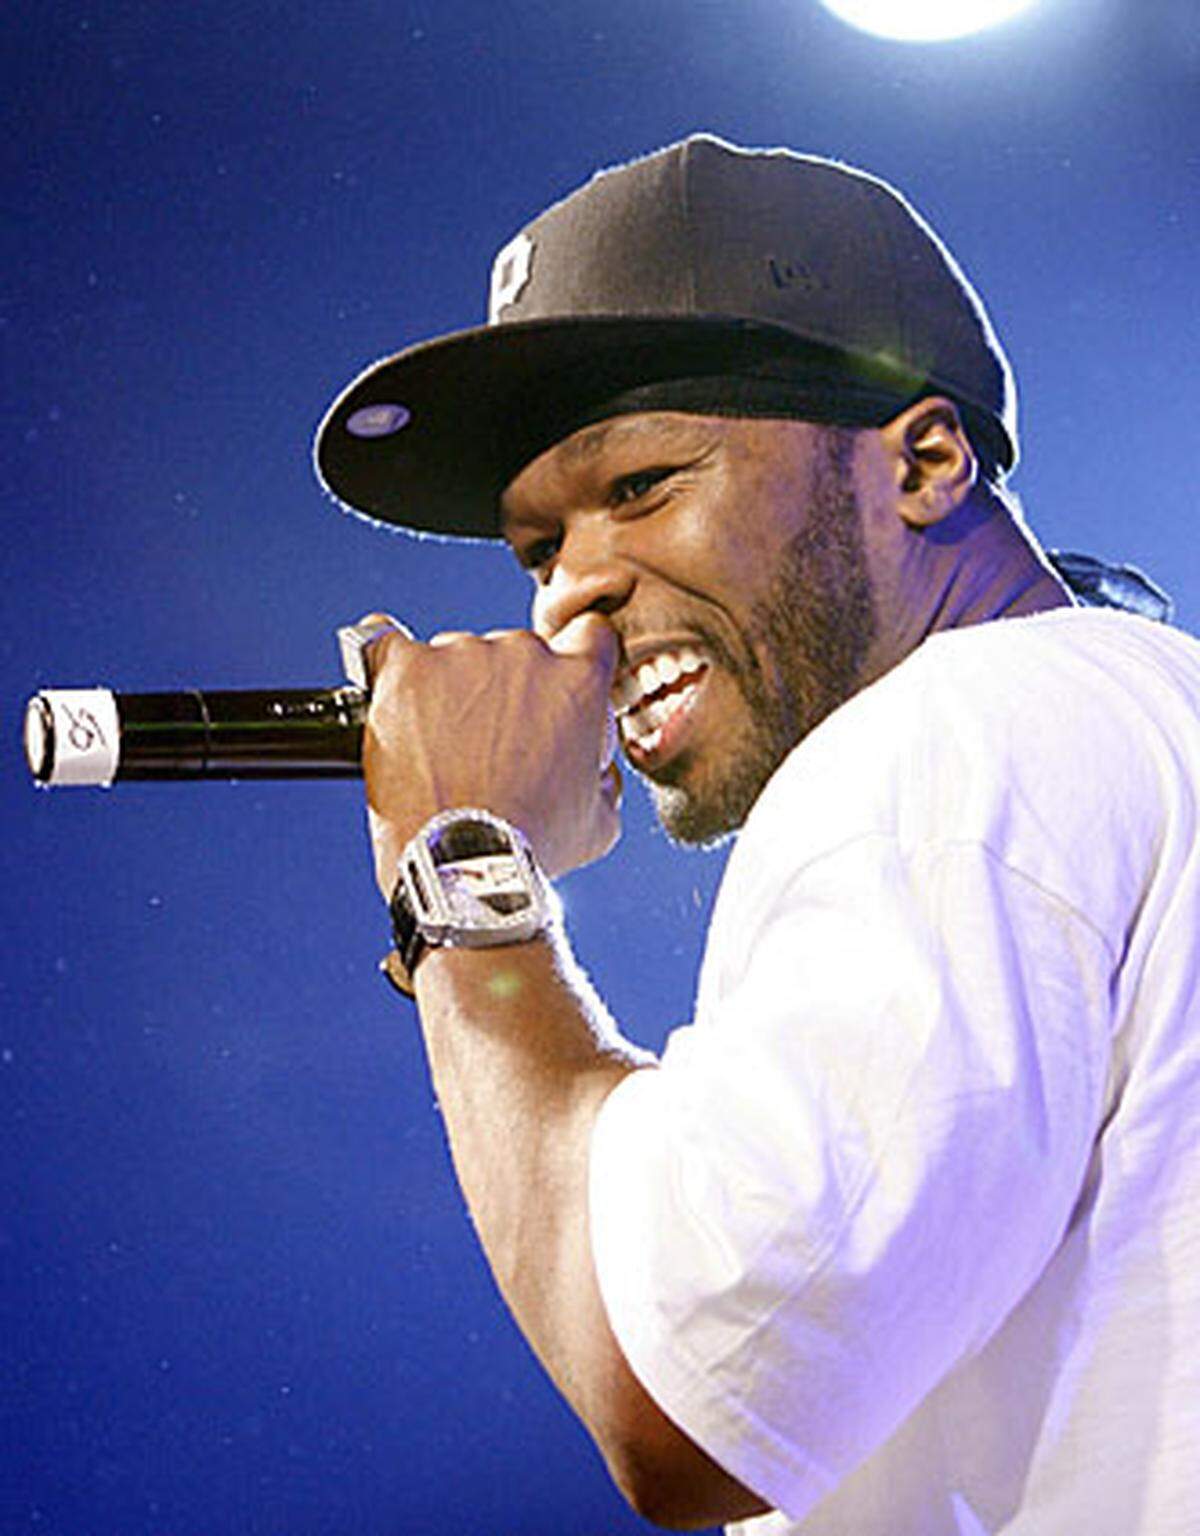 US-Rapper 50 Cent, mit bürgerlichem Namen Curtis Jackson, tritt erneut vor die Kamera. Der Musiker und Produzent Randall Emmett will das Sportdrama "Things Fall Apart" auf die Leinwand bringen. Unter der Regie von Mario Van Peebles soll 50 Cent einen College-Football-Star spielen, der nach persönlichen Rückschlägen mit seiner eigenen Sterblichkeit konfrontiert wird. 50 Cent schrieb an dem Drehbuch mit. Der Musiker, der zuletzt das Album "Before I Self Destruct" auf den Markt brachte, sagt, dass Filme drehen seine "große Leidenschaft" sei. Man könne damit viel mehr ausdrücken als mit einem kurzen Lied.  Quelle: "Variety"